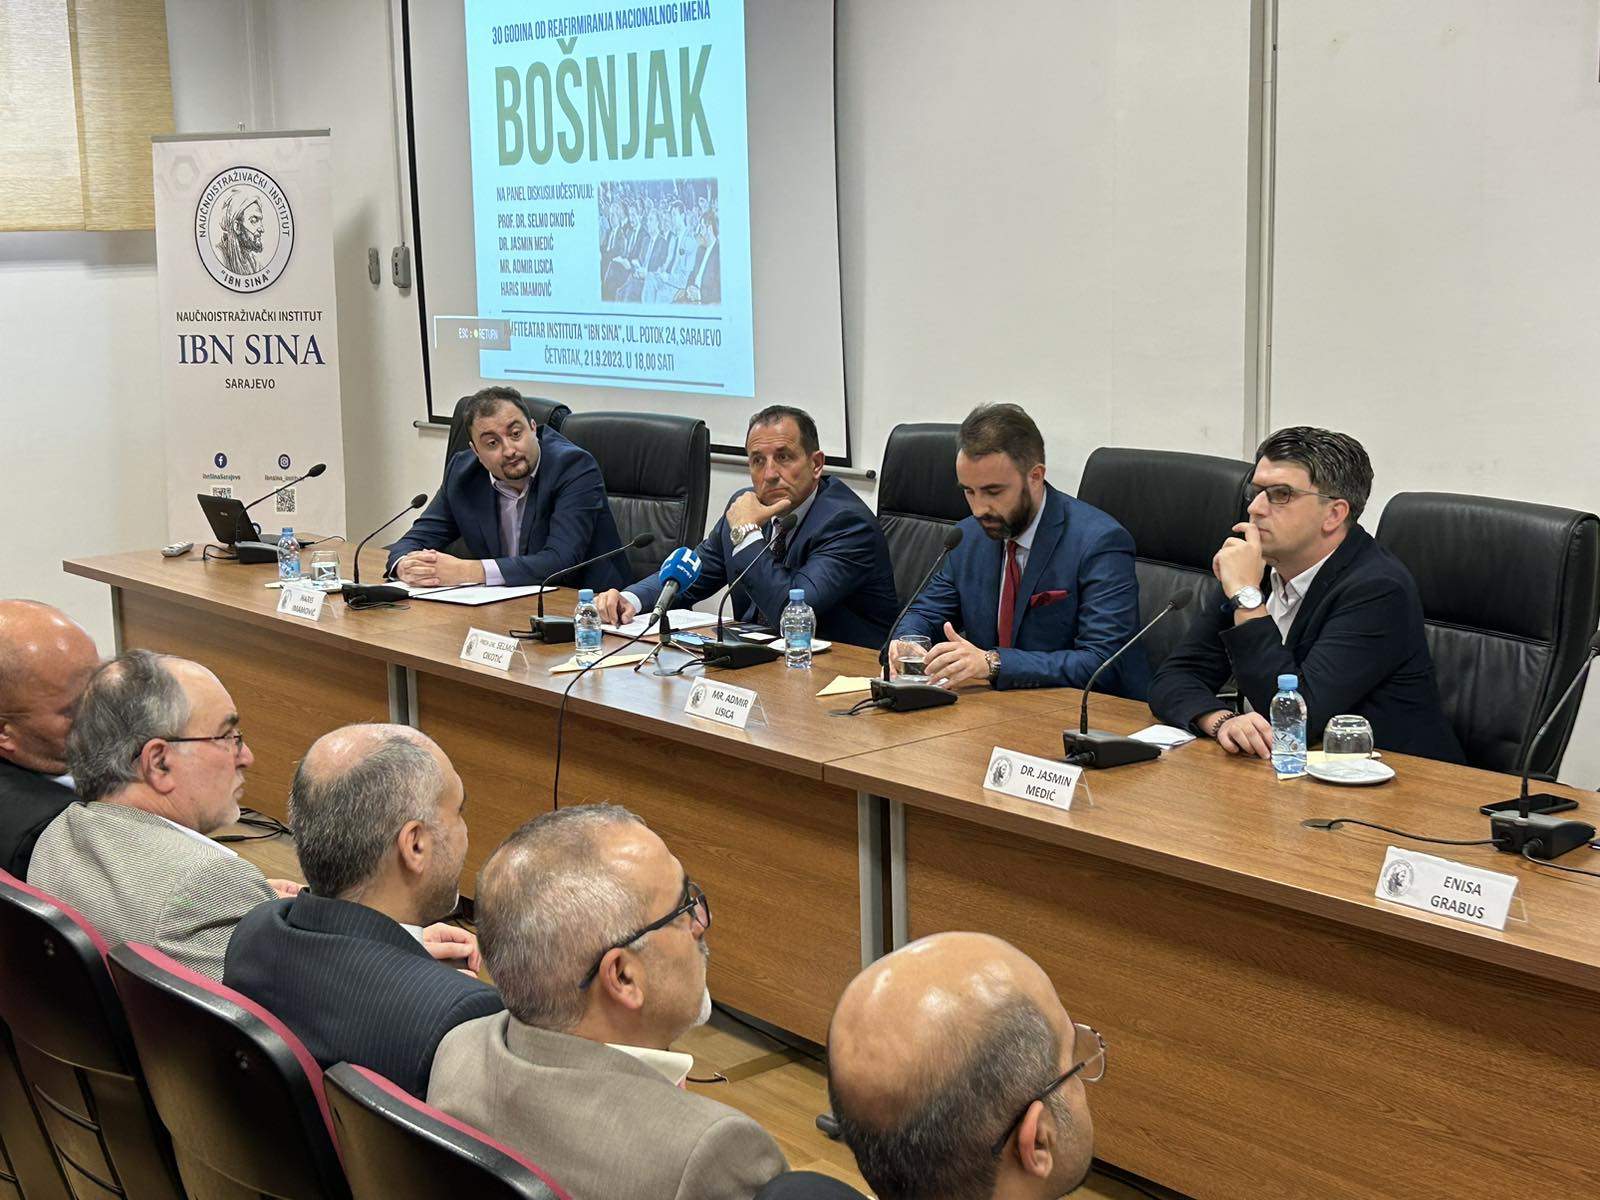 Centar za balkanološke studije organizirao panel-diskusiju povodom obilježiavanja 30 godina od reafirmiranja nacionalnog imena Bošnjak